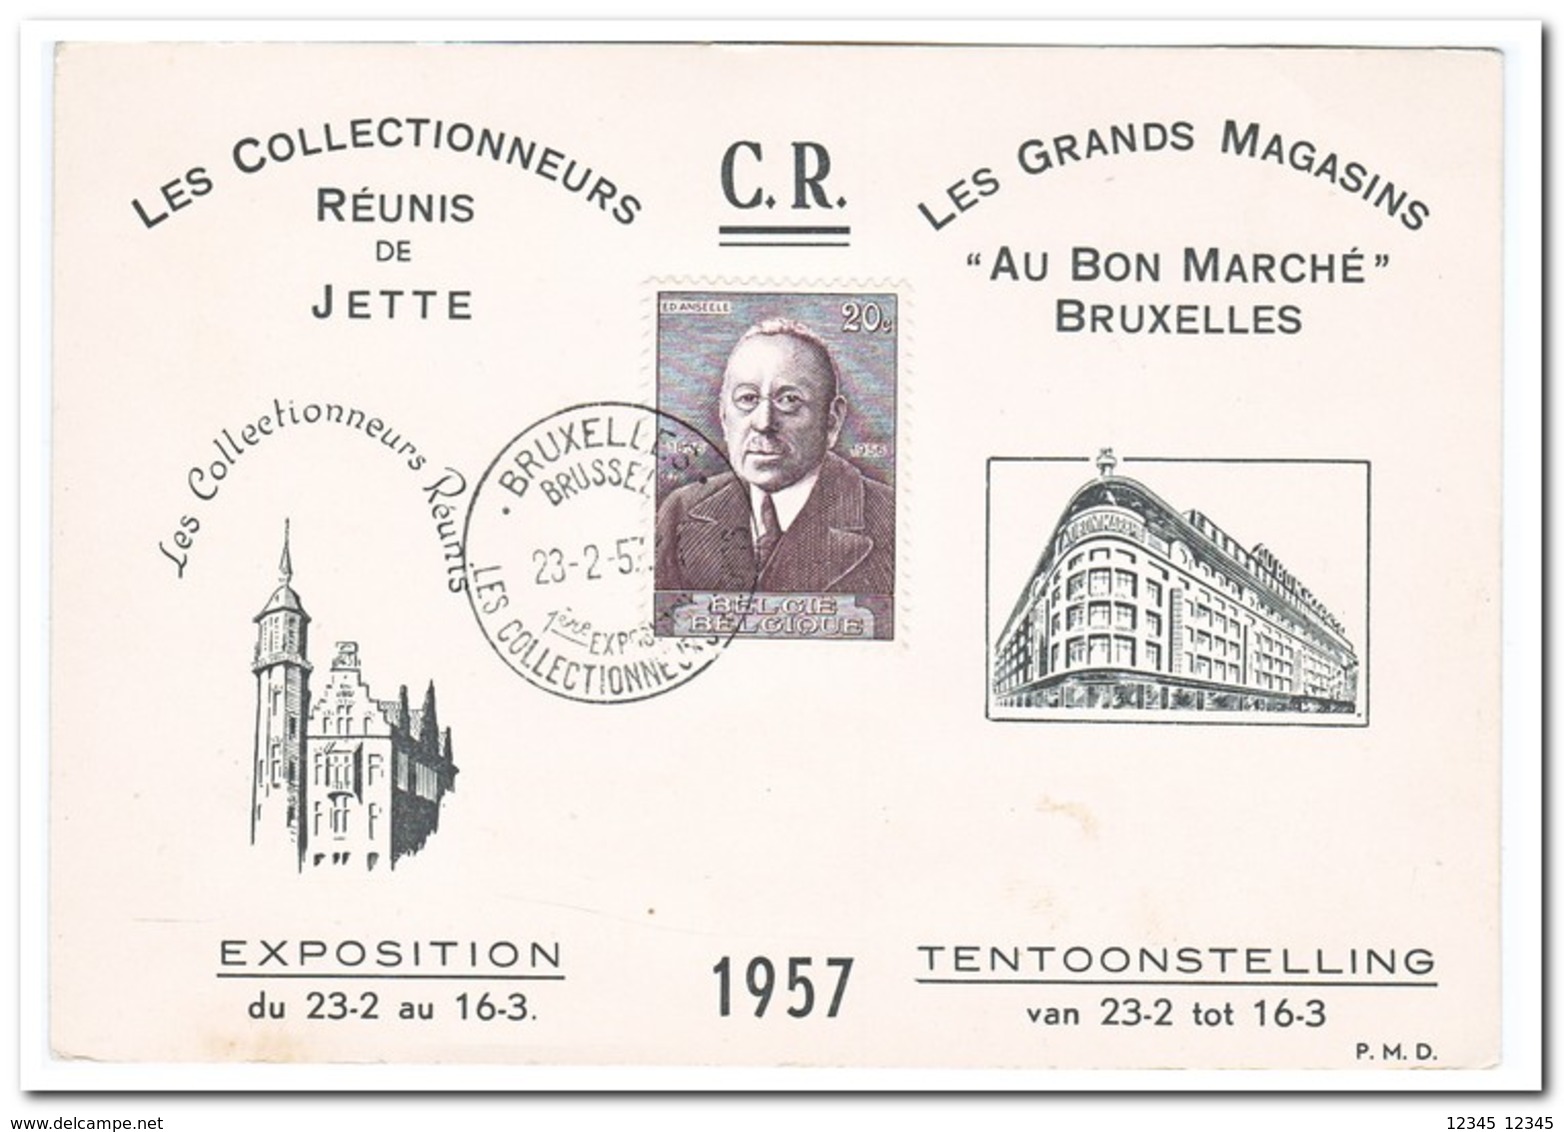 Les Collectionneurs Reunis 1957, Tentoonstelling Van 23-2 Tot 16-3 - Tentoonstellingen